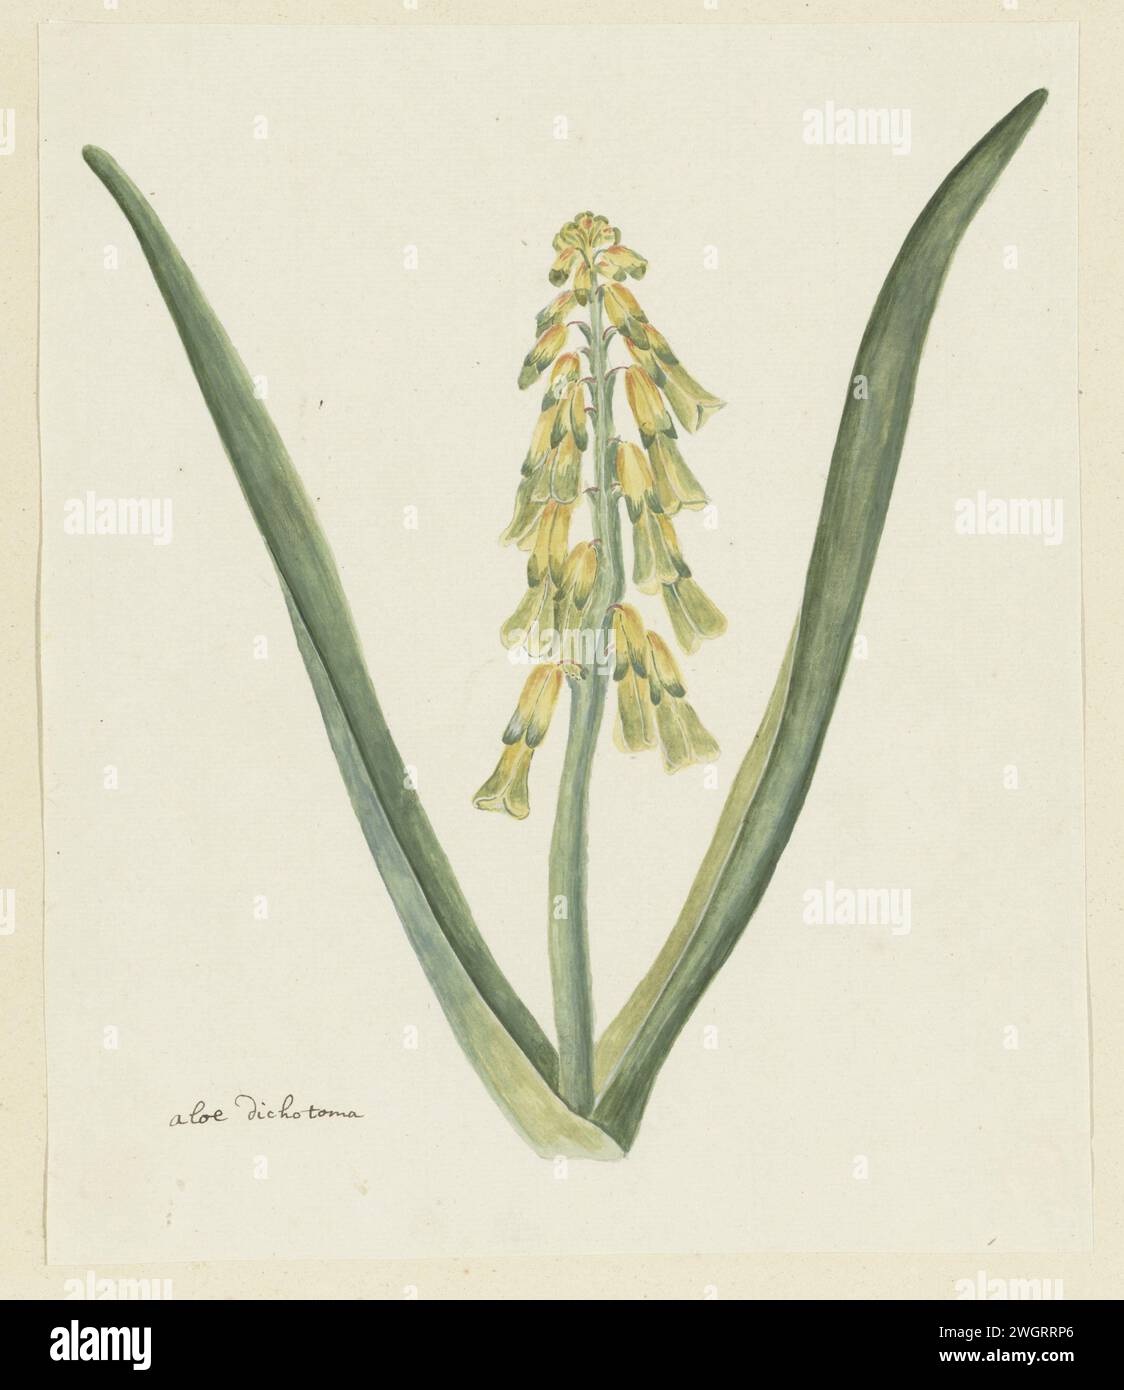 Lachenalia aloides (L.f.) Engl. (Opal flower), 1777 - 1786 drawing Lachenalia aloides (L.f.) Engl.  paper. deck paint. ink. pencil. chalk. watercolor (paint) pen / brush plants; vegetation Stock Photo